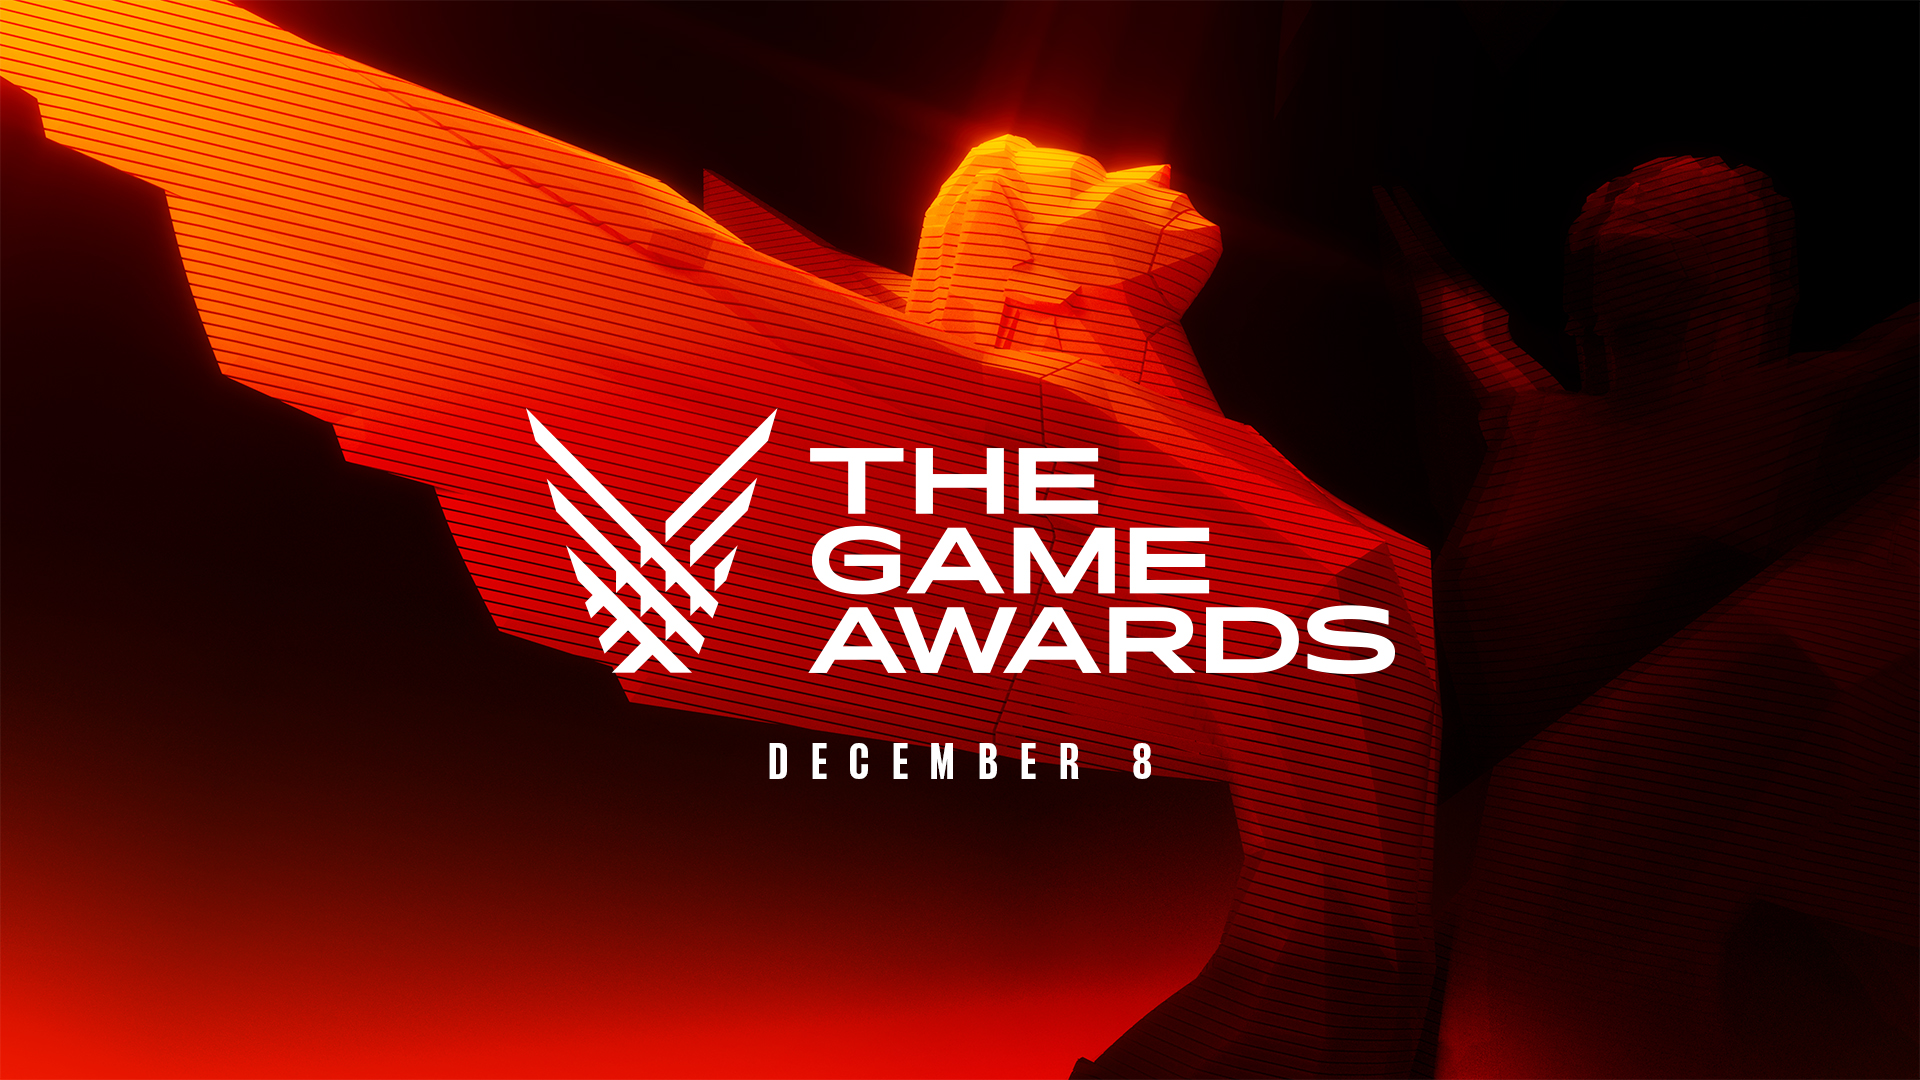 Bigo Live to livestream The Game Awards 2022 across more than 10